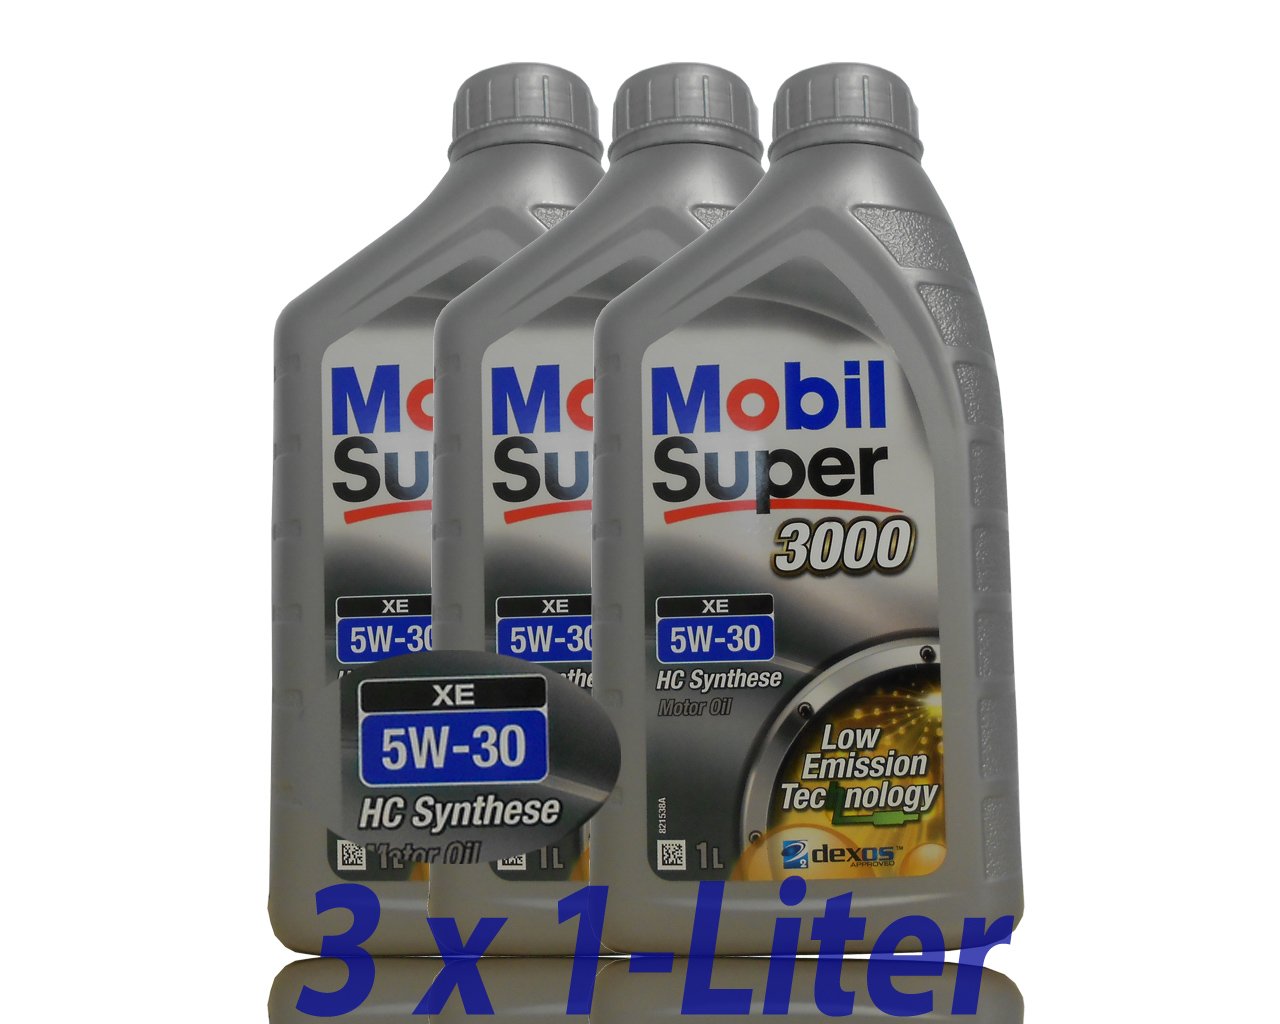 3x 1 L Liter Mobil Super™ 3000 XE 5W-30 Motor-Öl von Mobil